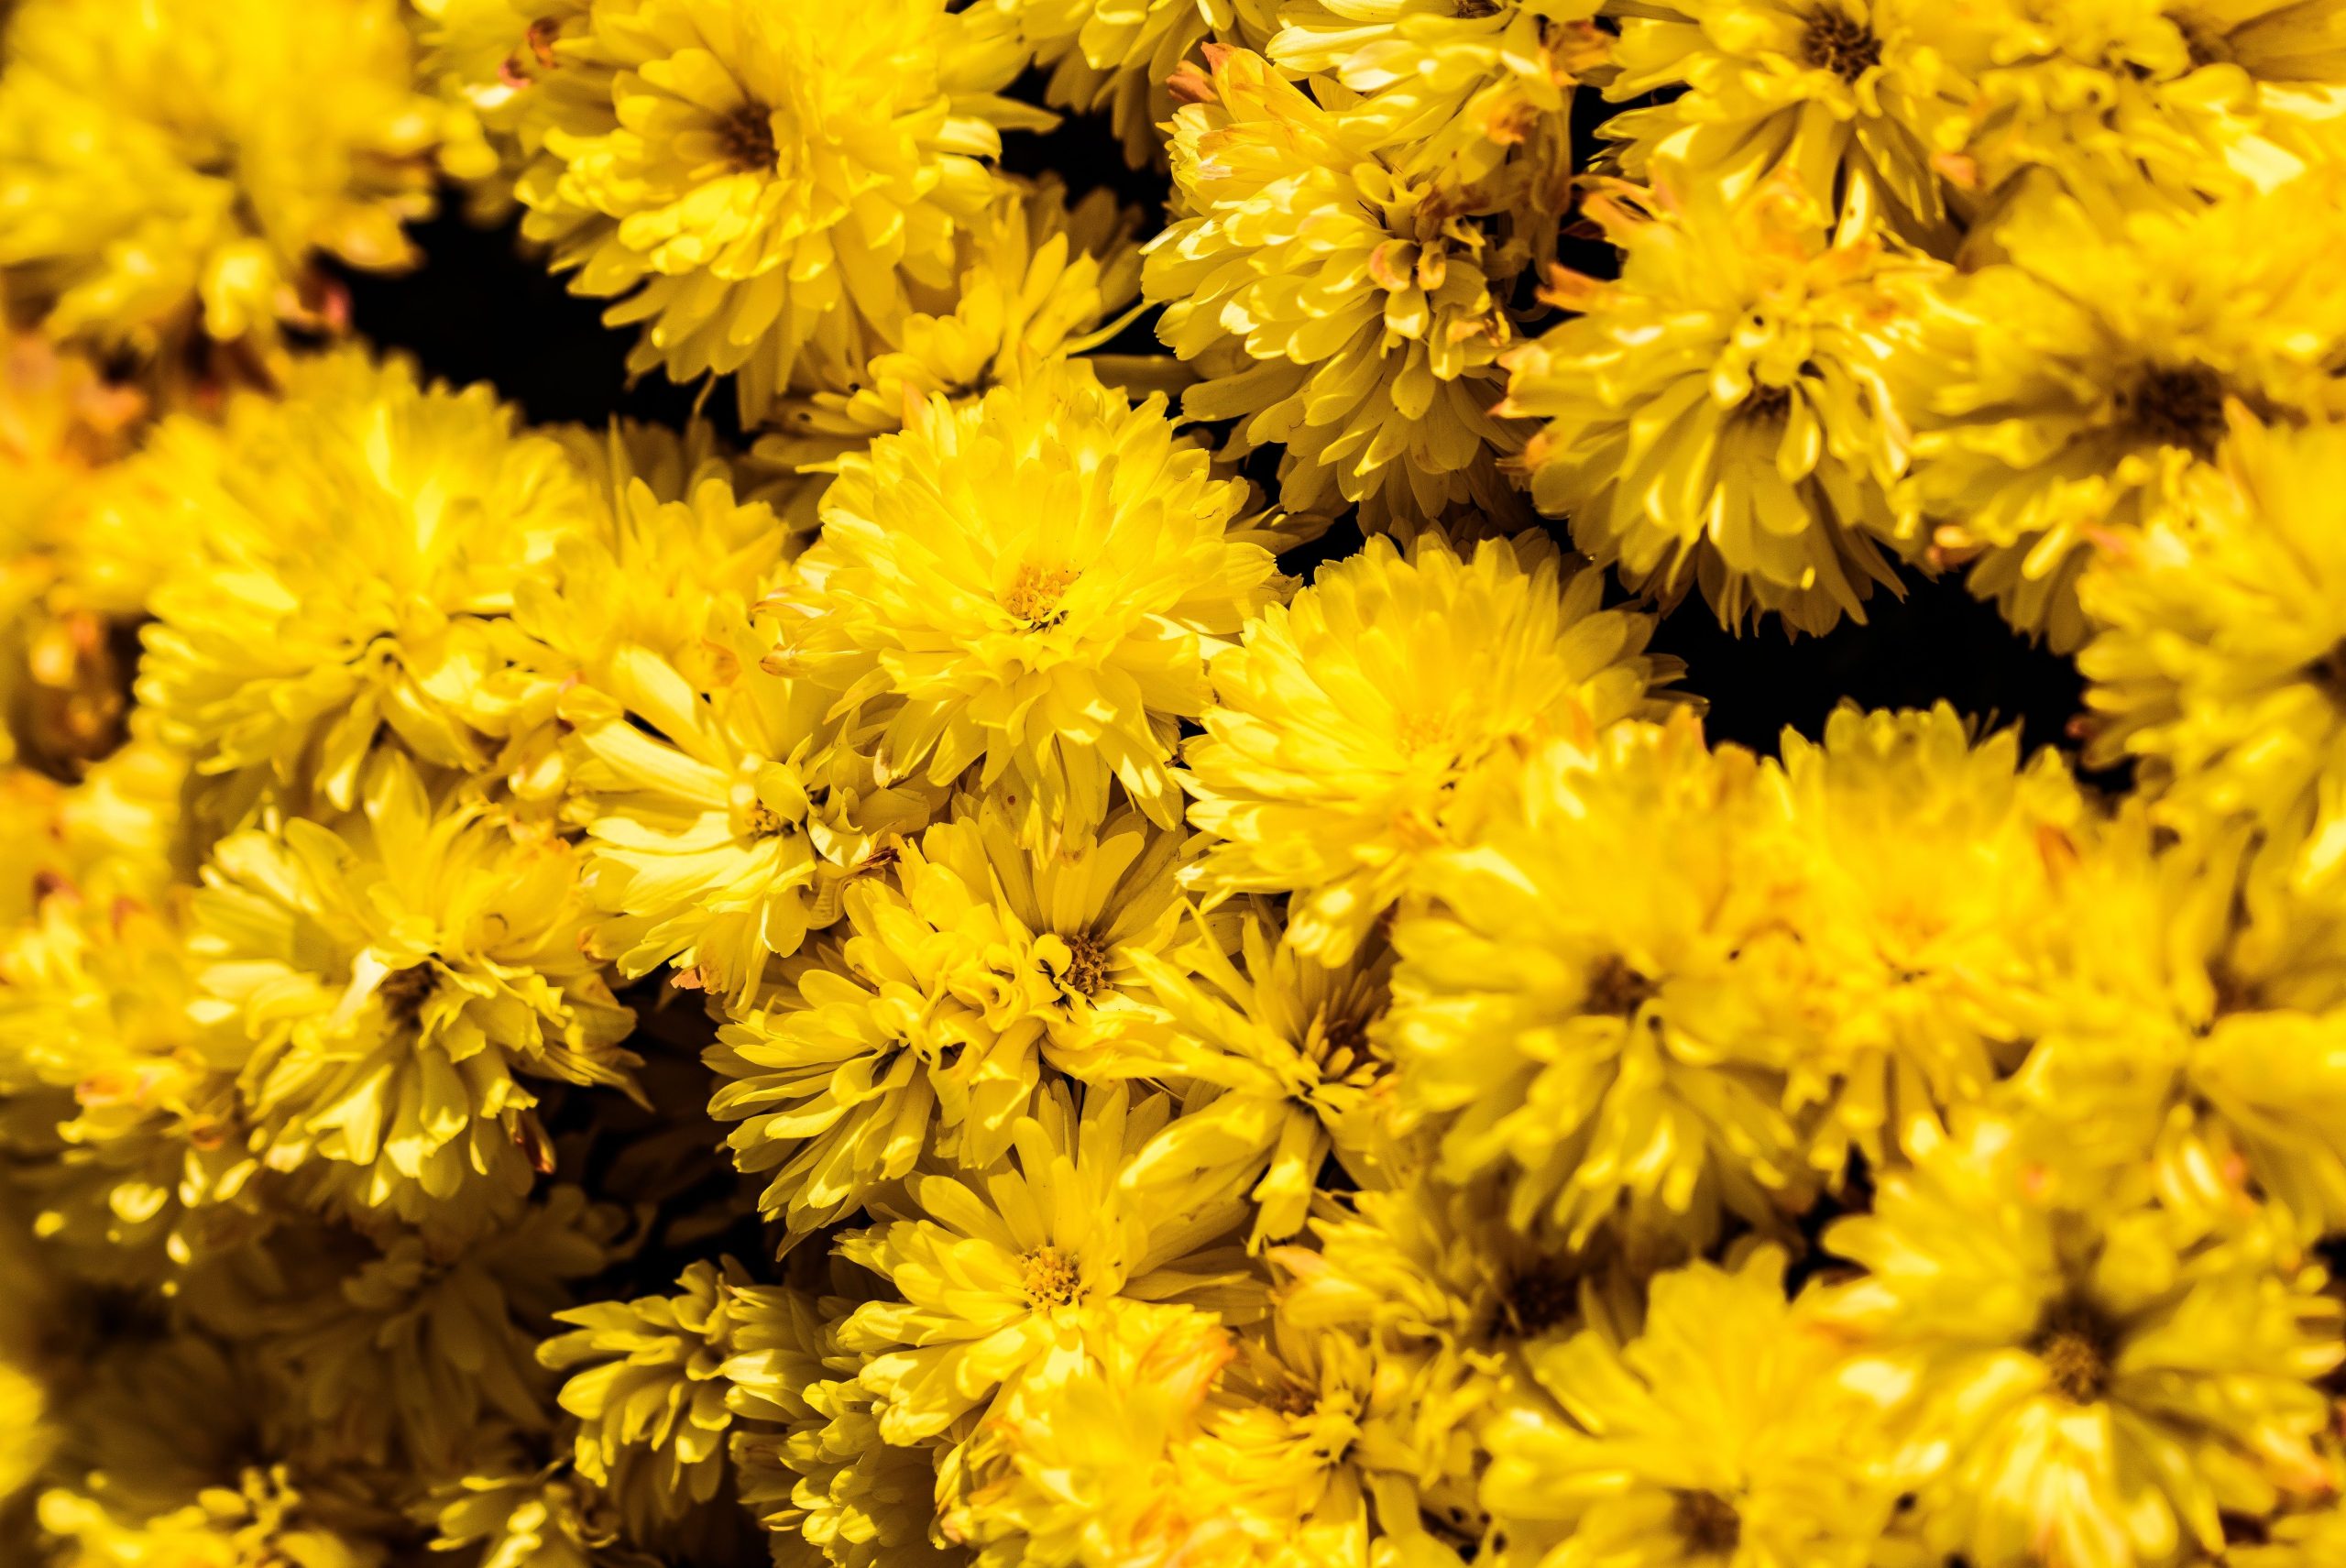 Emociones que transmiten las flores amarillas
